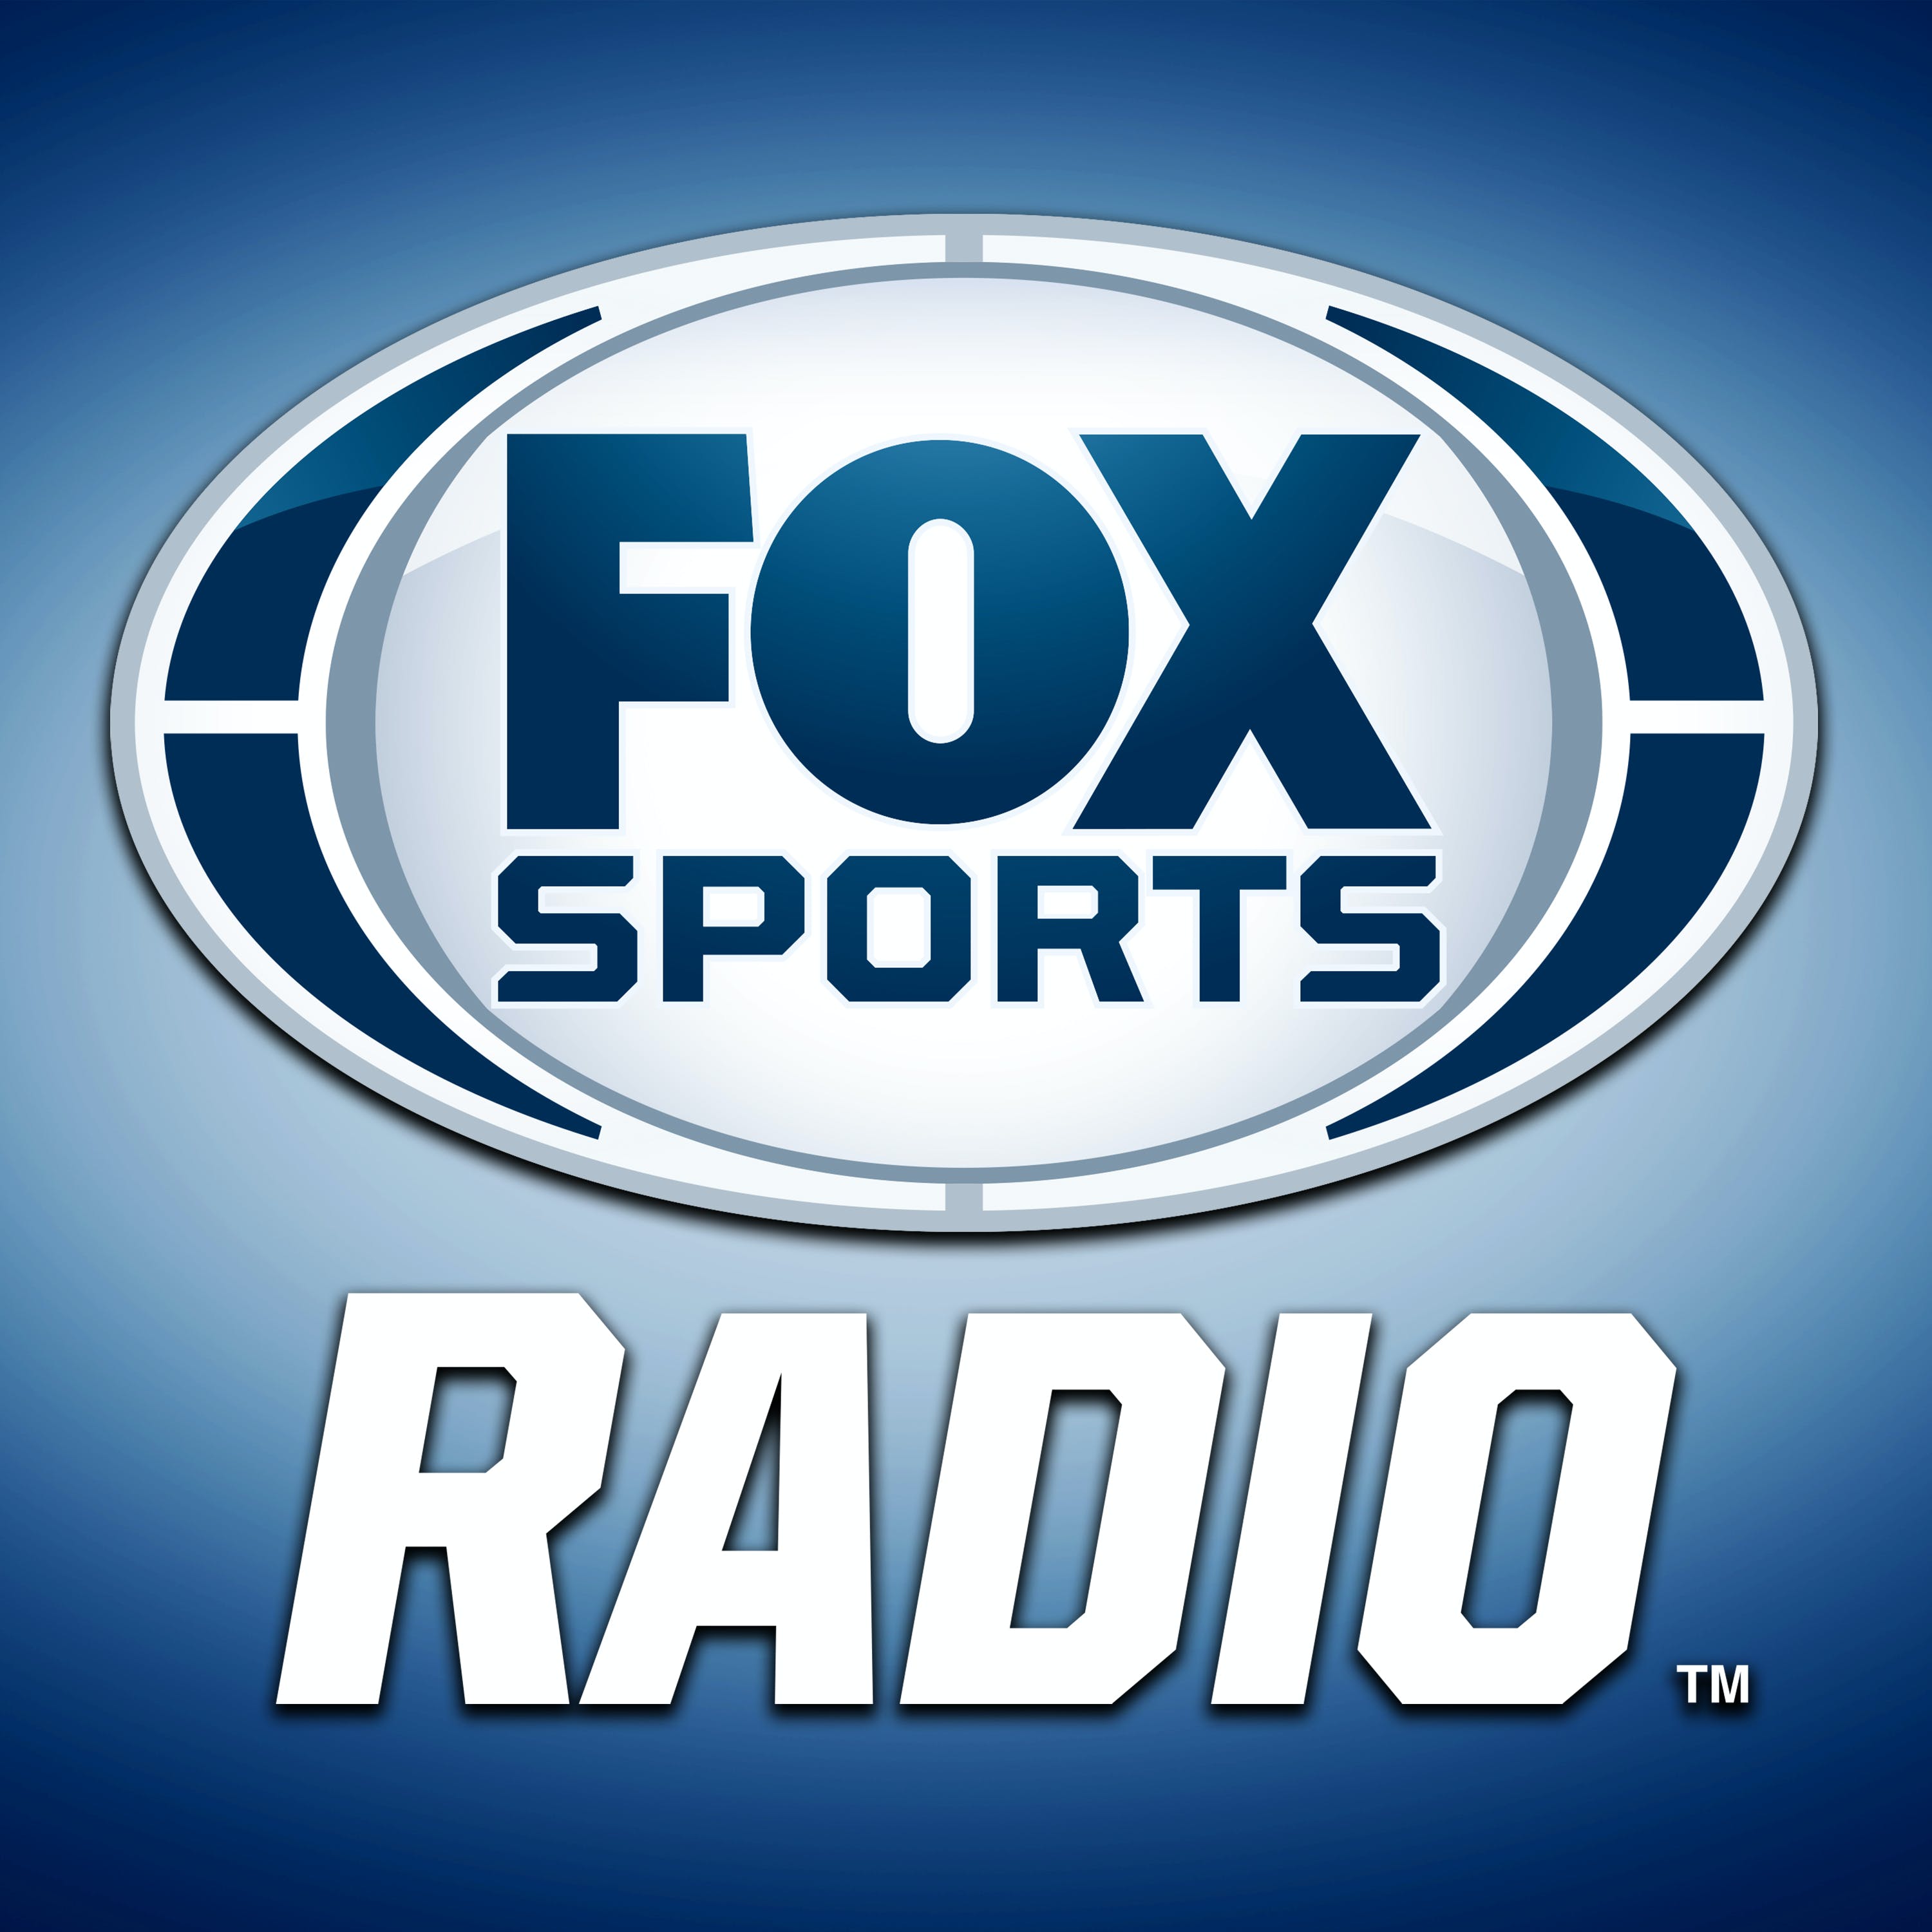 05/29/2021 - FOX Sports Saturday with Steve Hartman and Geoff Schwartz